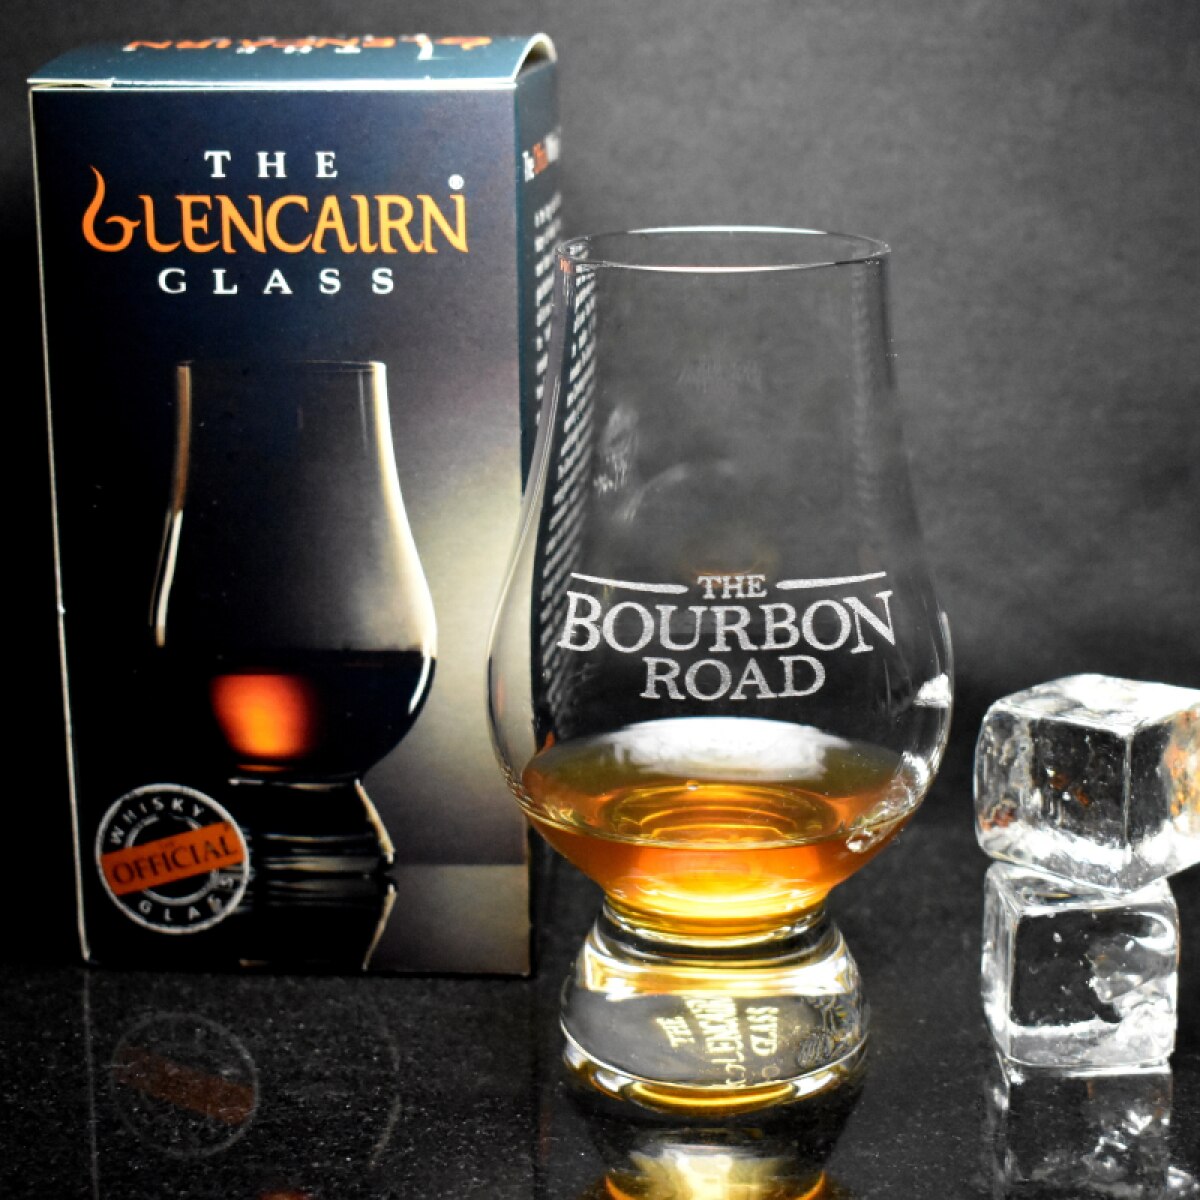 The Bourbon Road Glencairn Whisky Glass